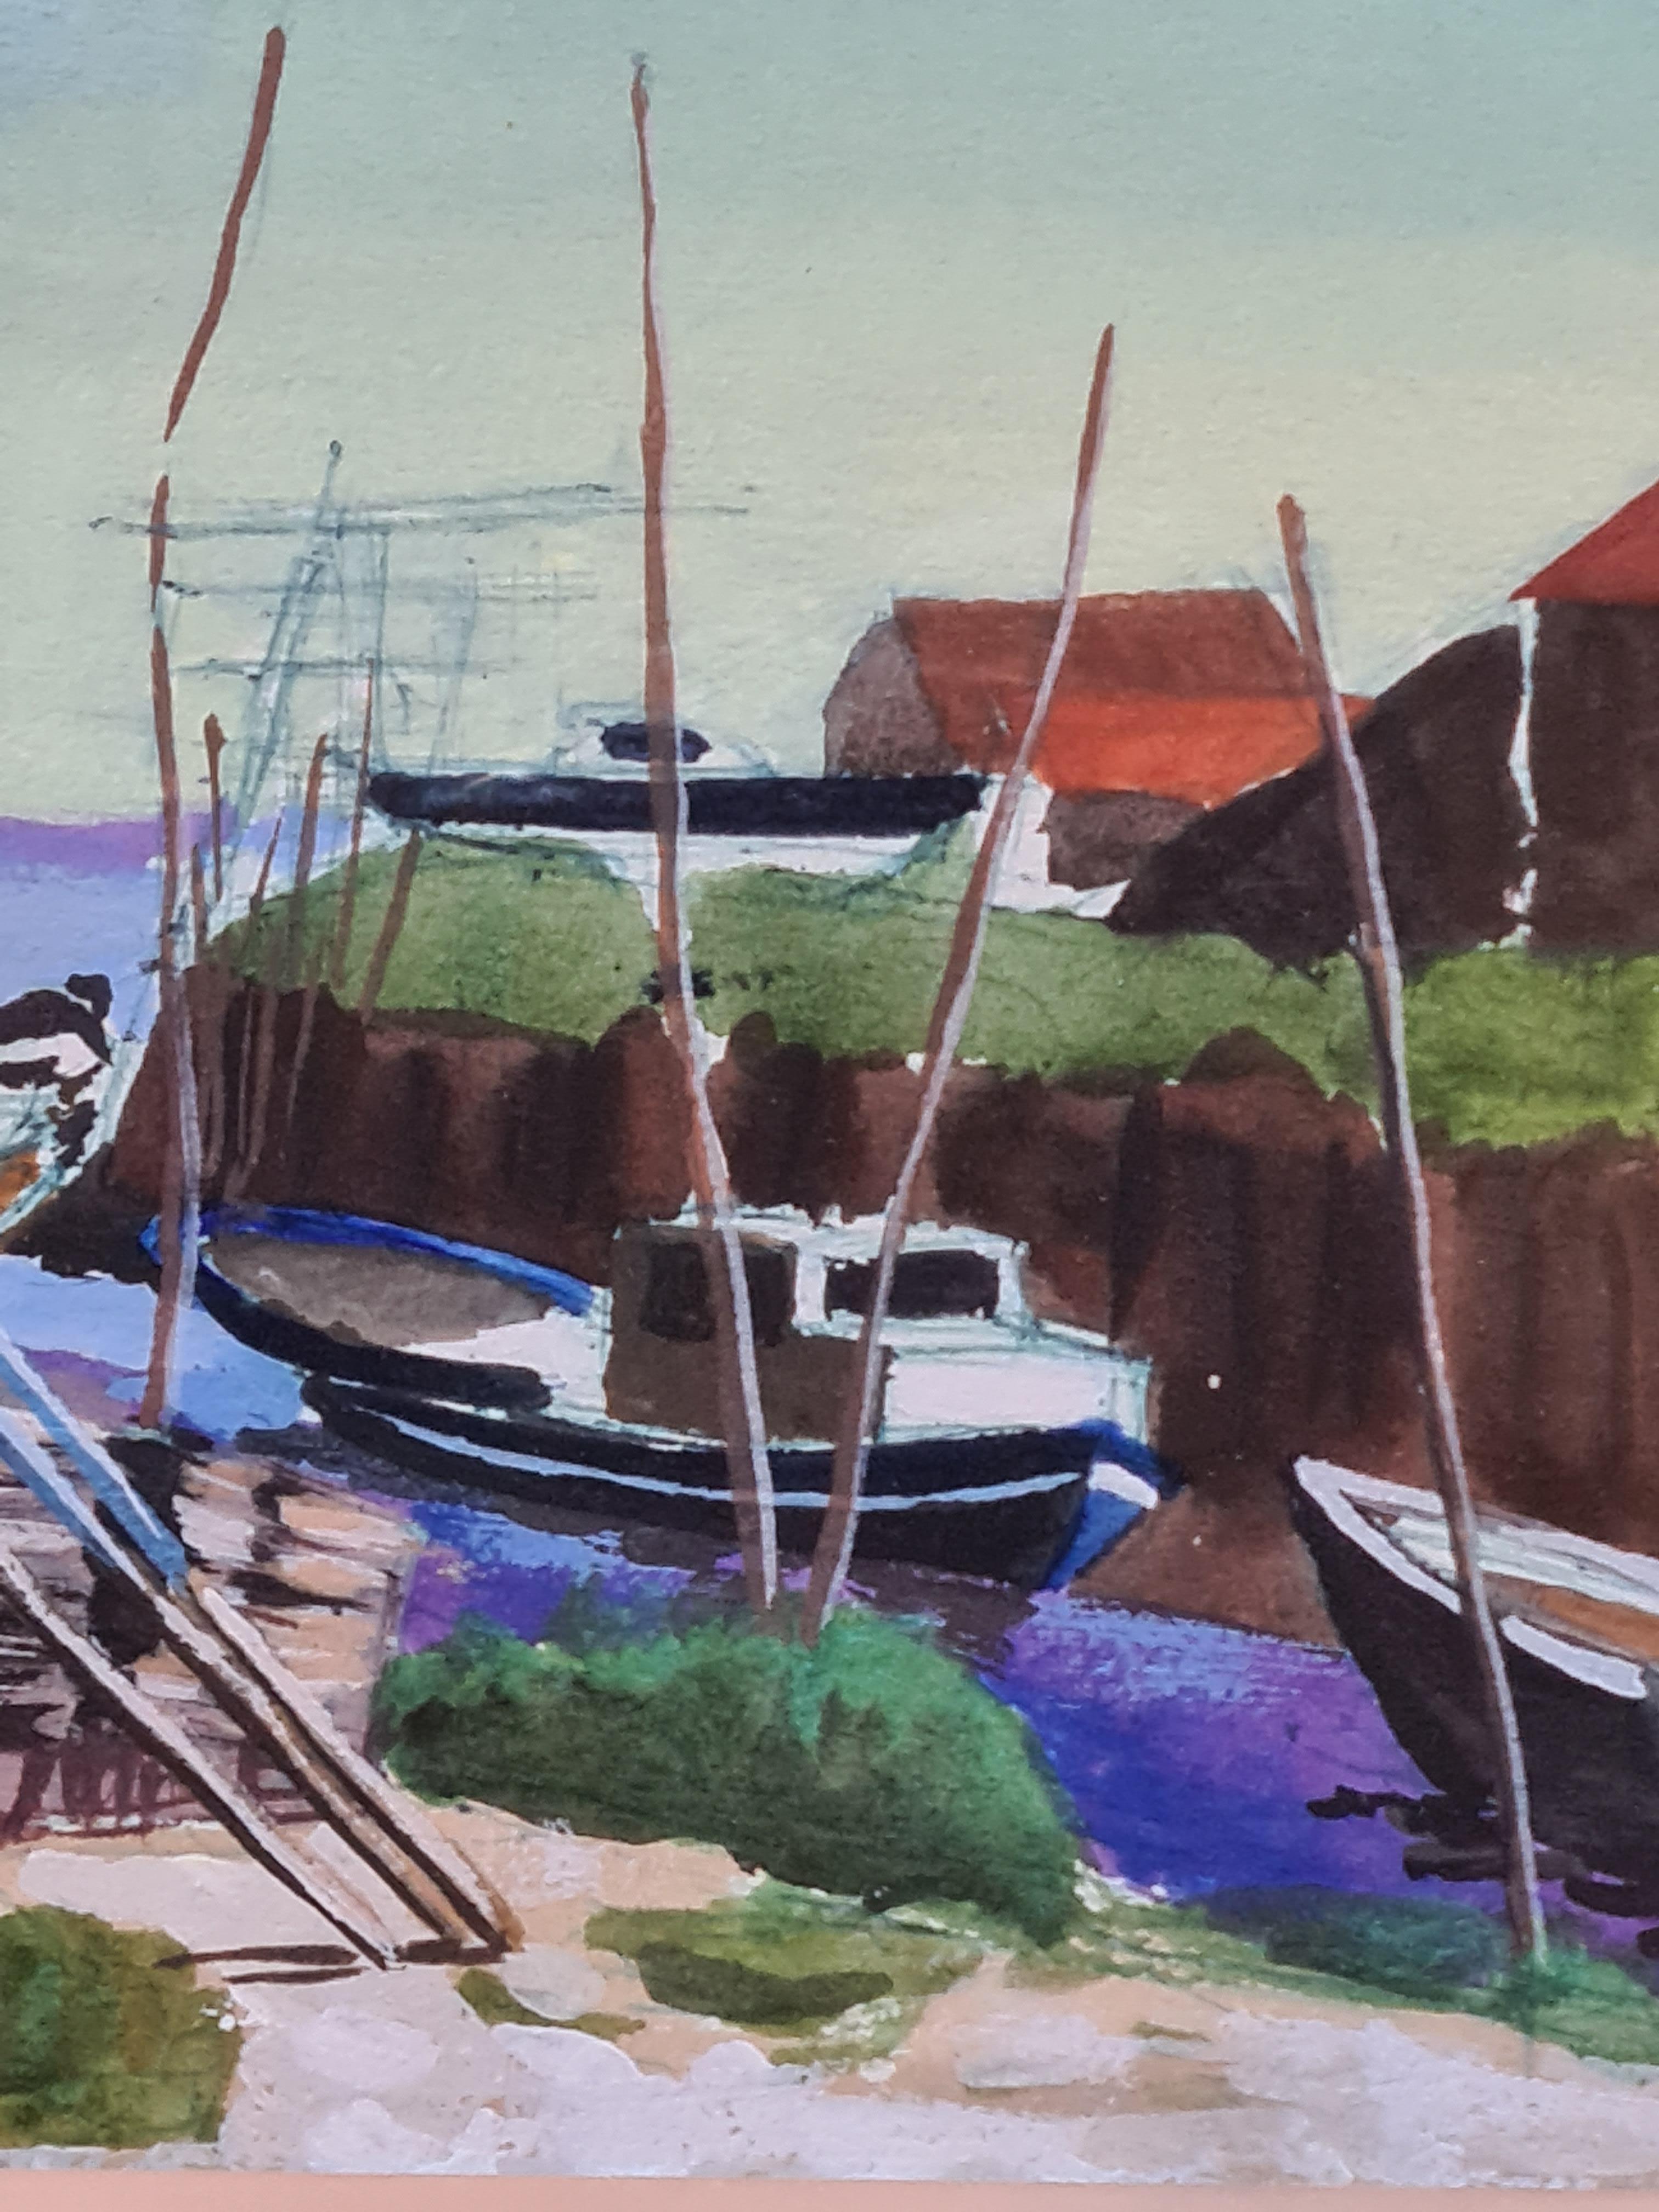 Aquarellansicht von Booten in einem Hafen mit Blick aufs Meer des französischen Malers Jean-Paul Claveau. Das Gemälde ist unten links signiert und datiert und wird in einem bemalten Holzrahmen mit Passepartout unter Glas präsentiert.

Eine helle und